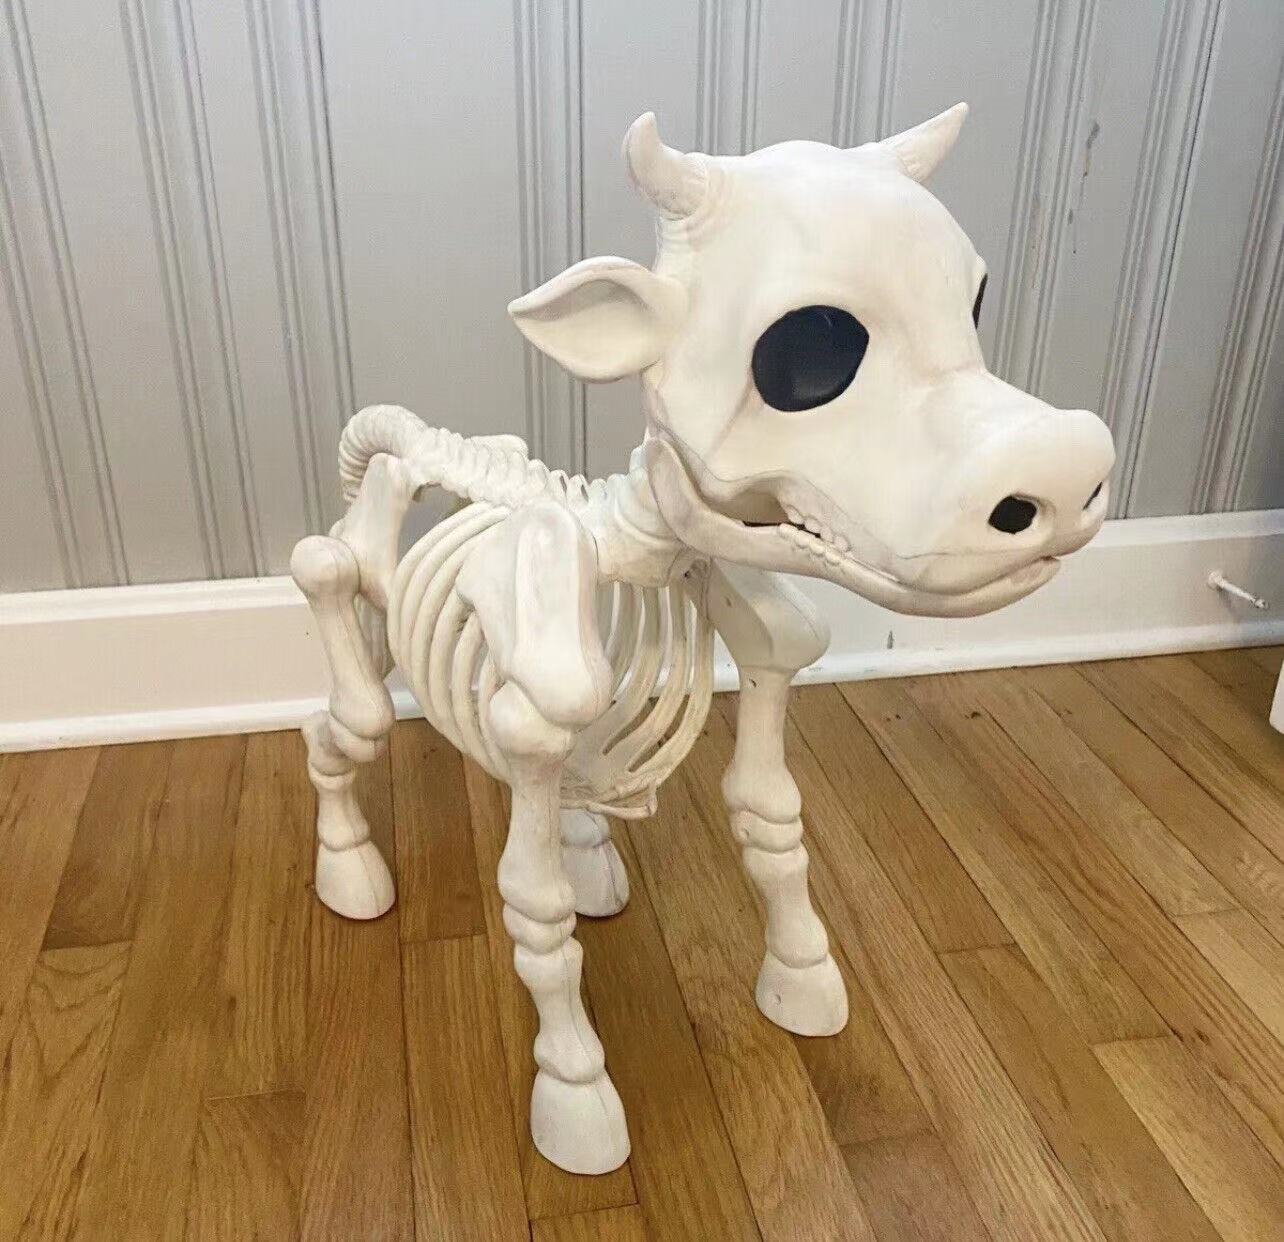 2023 Halloweenowa krowa szkielet szkielet podstępny cmentarz żywica krowa szkielet szkielet upiorne horror horror krowy dekoracje szkieletu